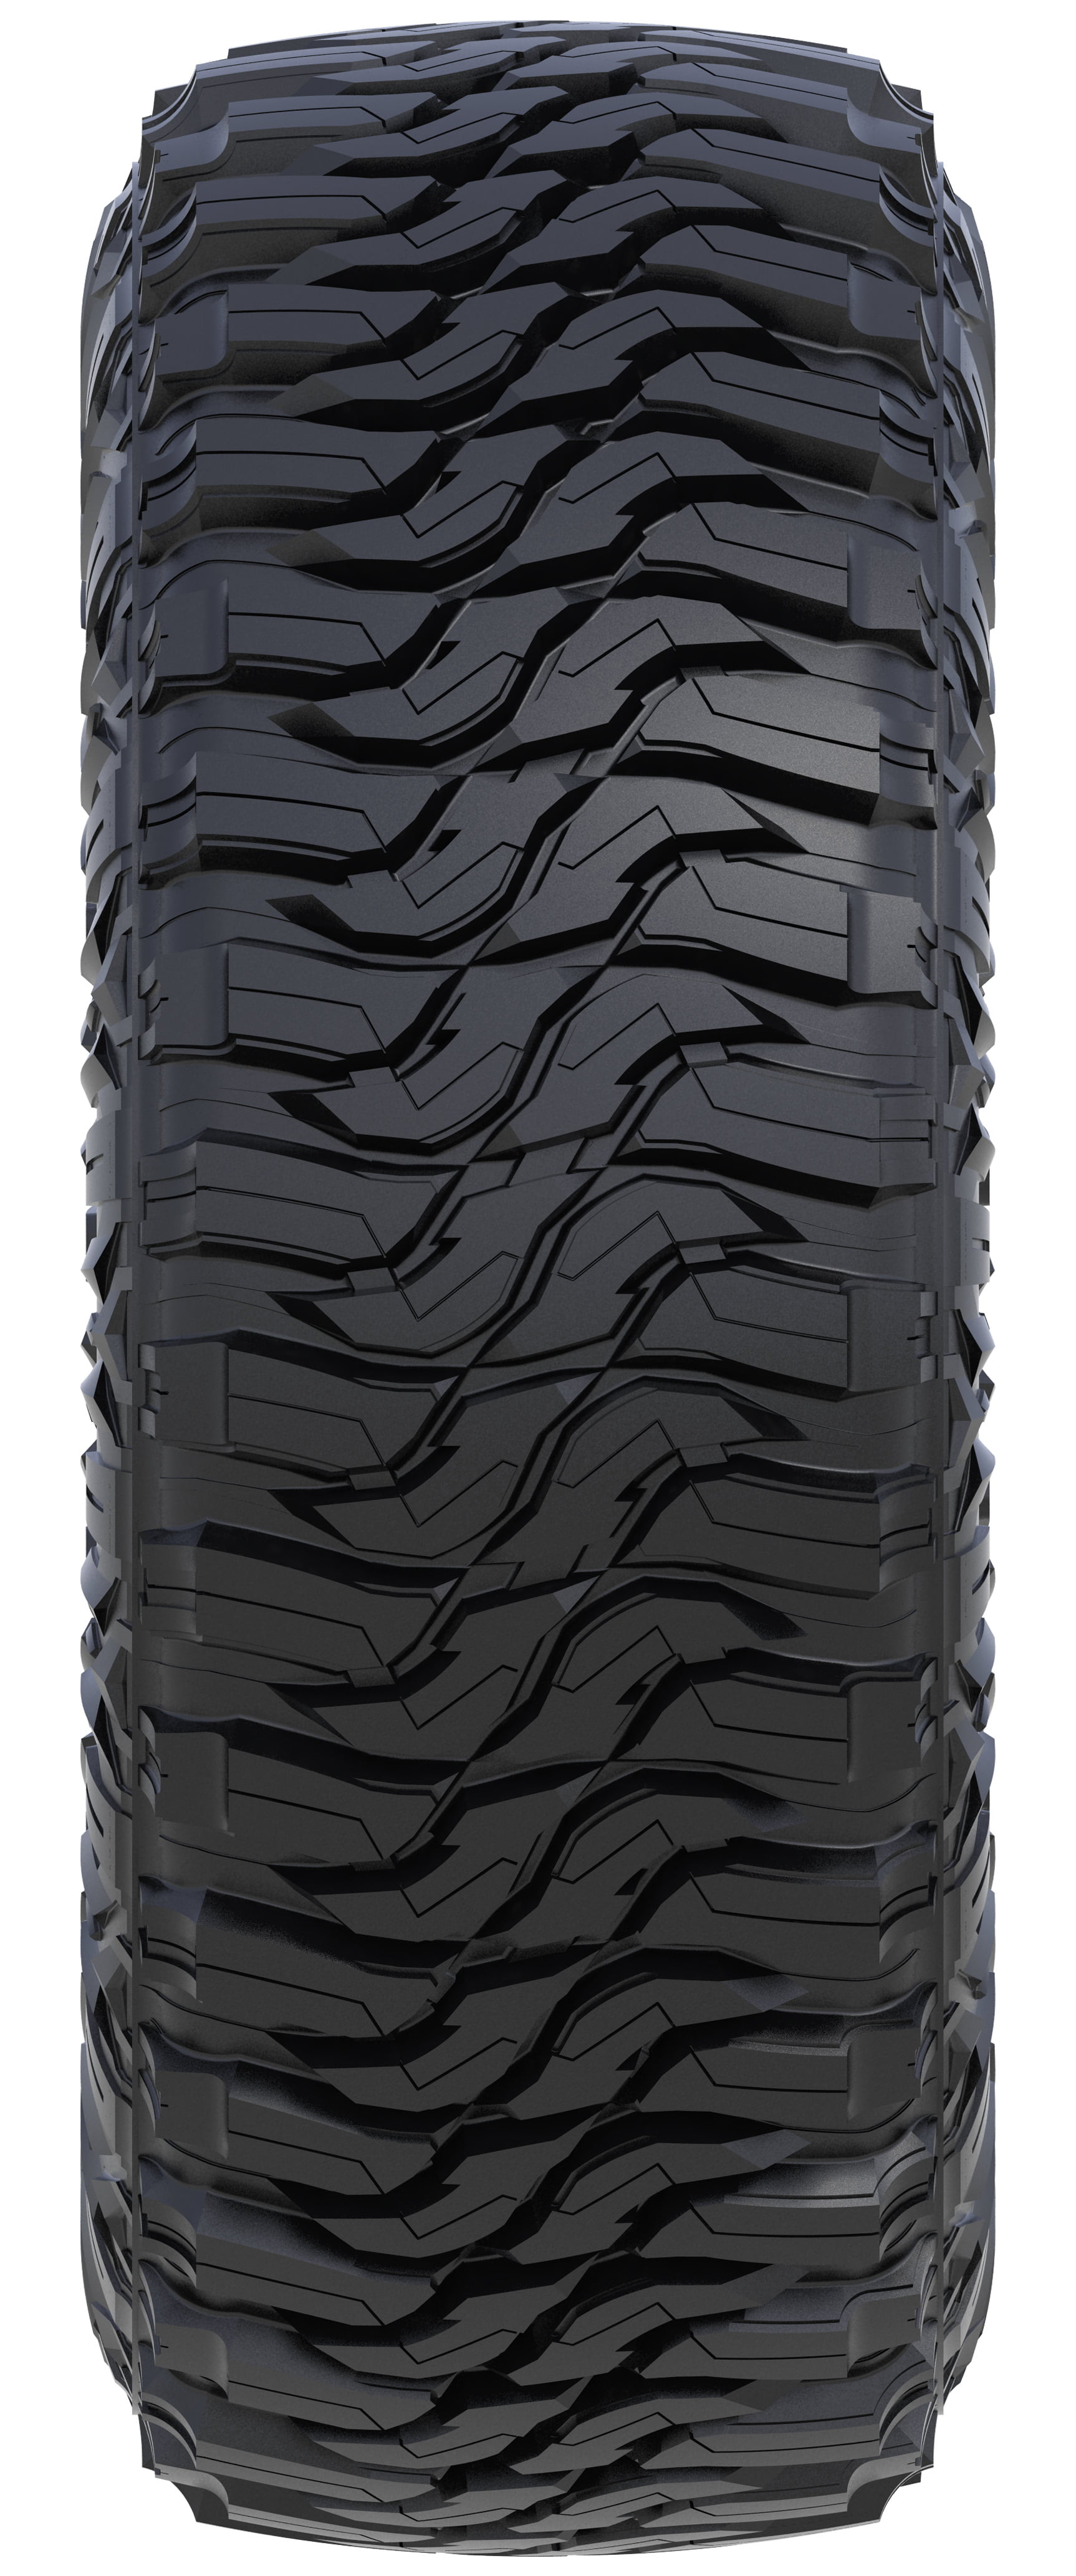 Tire Federal Xplora MTS LT 37X13.50R24 Load E 10 Ply M/T Mud